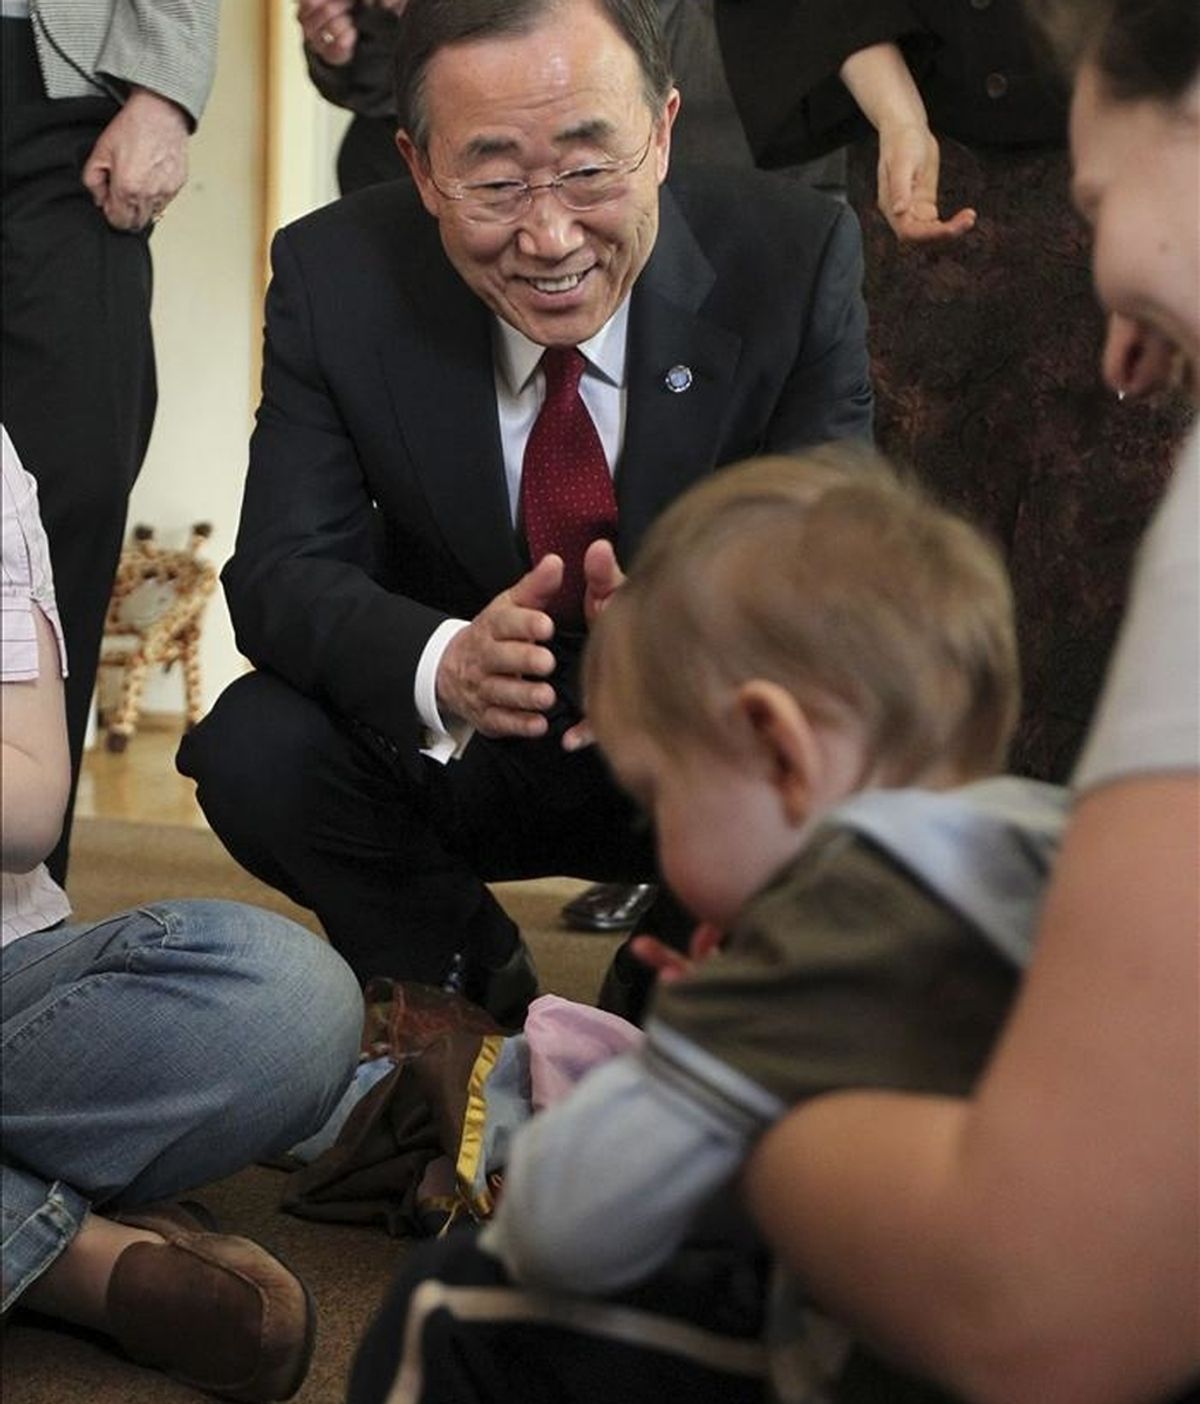 El secretario general de la ONU, Ban Ki-moon (c), interactúa con un niño durante su visita al Centro de Pedagogía Curativa (CCP) en Moscú, Rusia. EFE